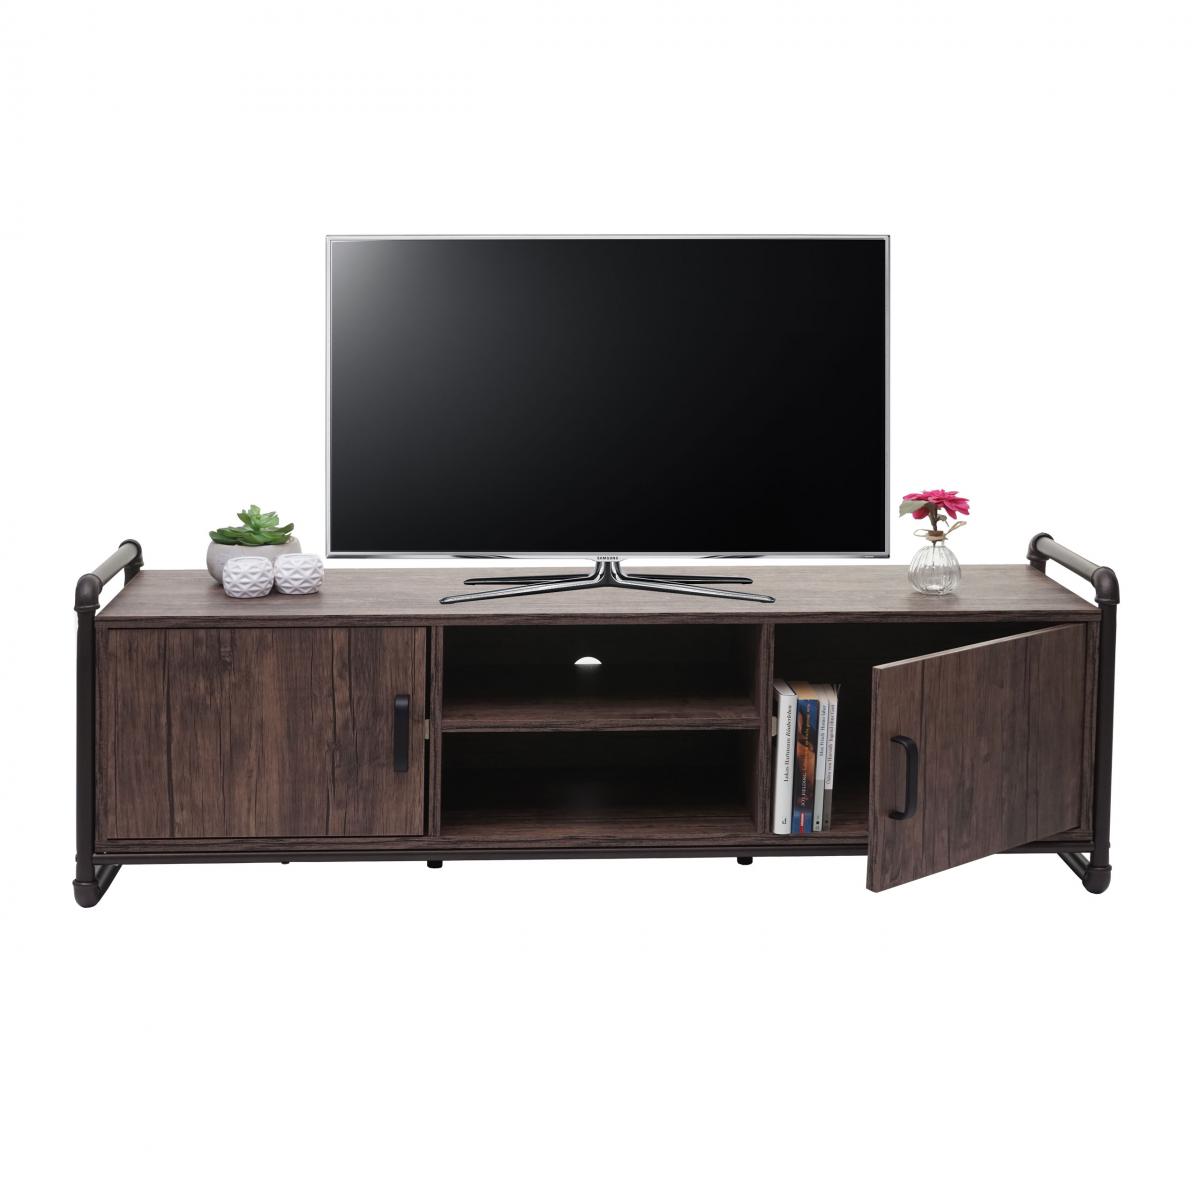 Mendler - Meuble TV HWC-F58, table basse TV, compartiment de rangement structure 3D design industriel marron 45x140x40cm - Meubles TV, Hi-Fi